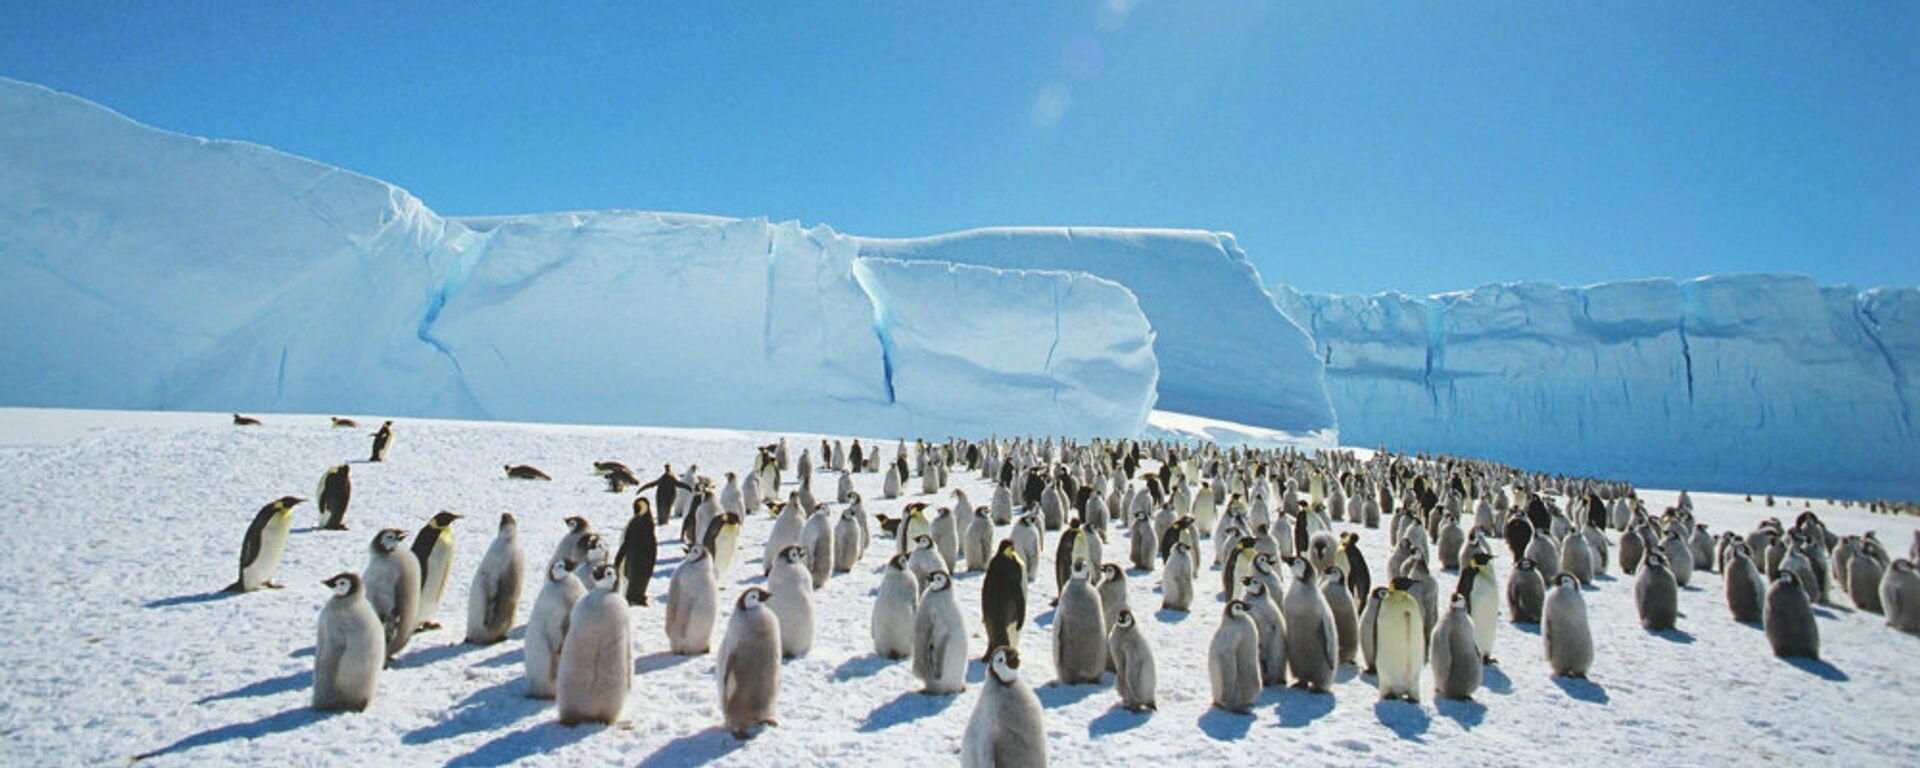 Carski pingvini u blizini sovjetske istraživačke stanice na Antarktiku - Sputnik Srbija, 1920, 15.02.2021